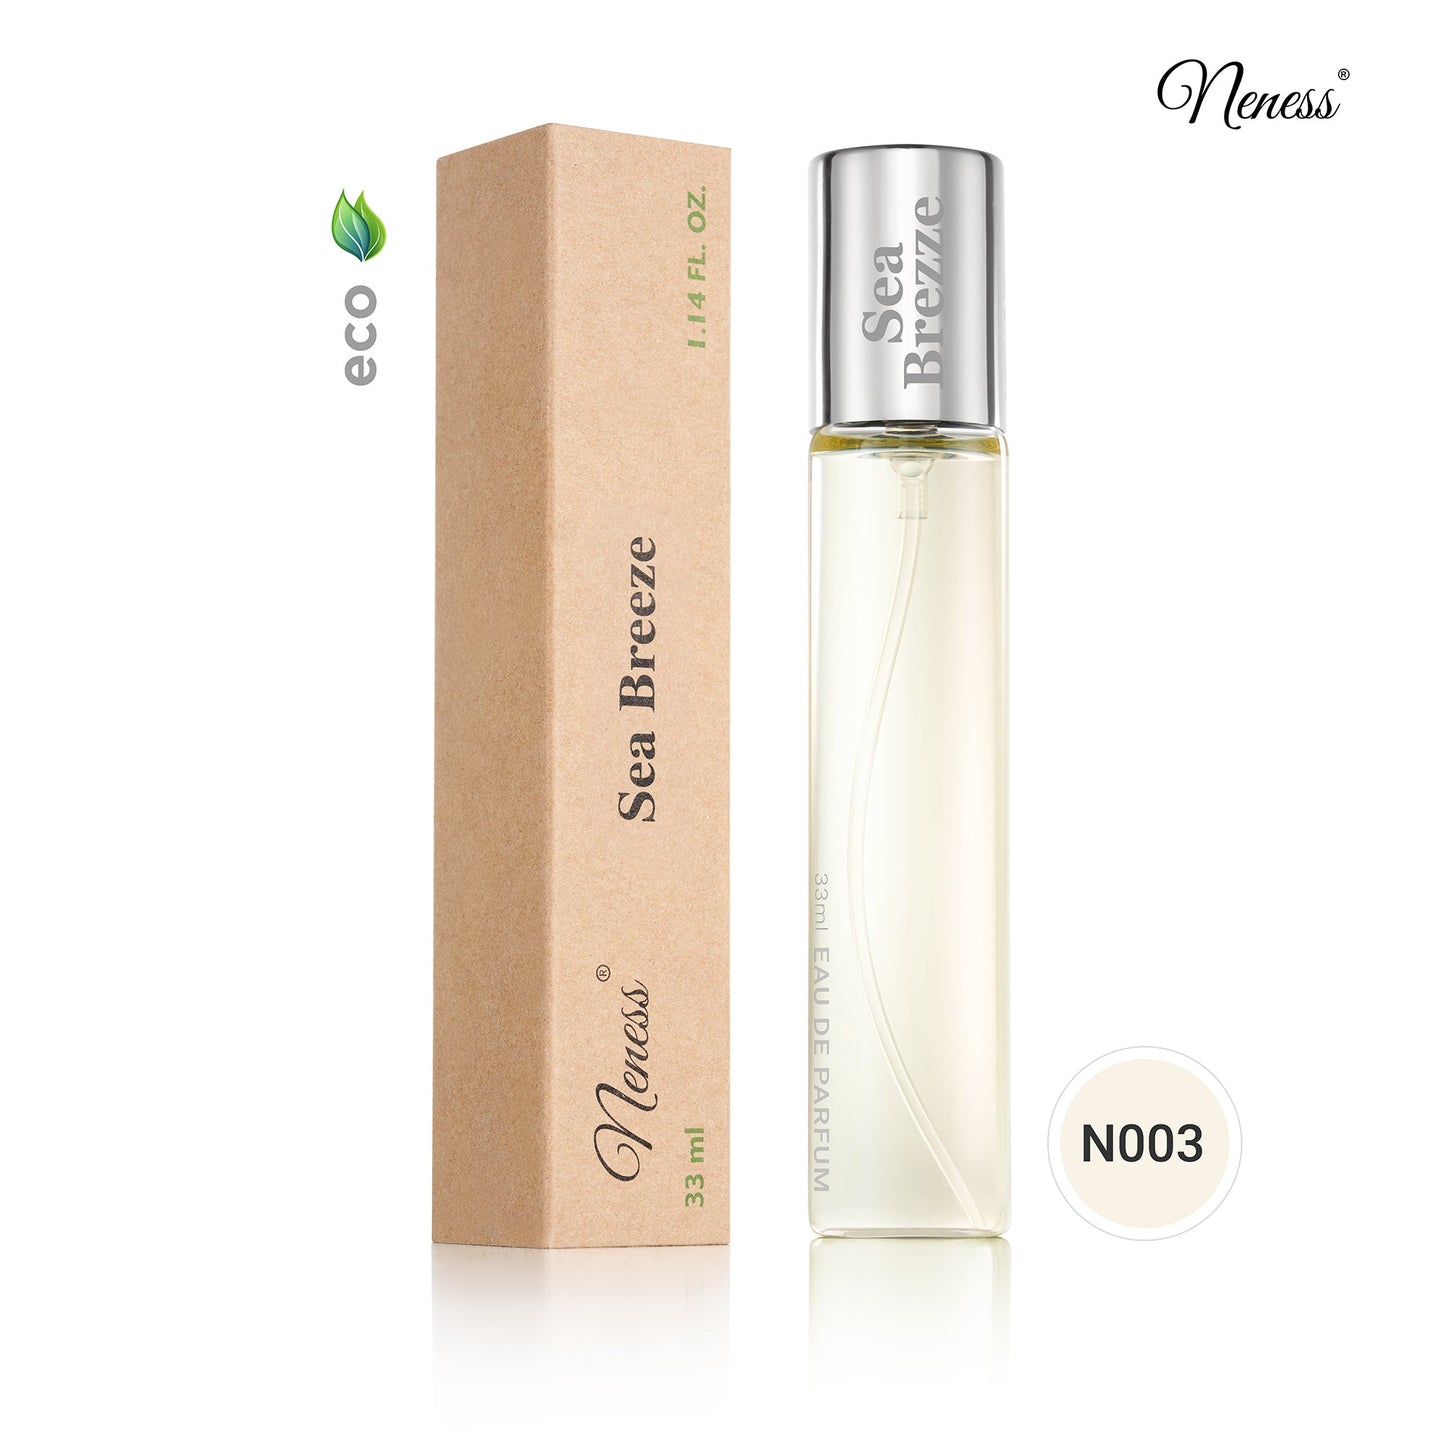 N003. Neness Sea Breeze - 33 ml - Parfums voor mannen